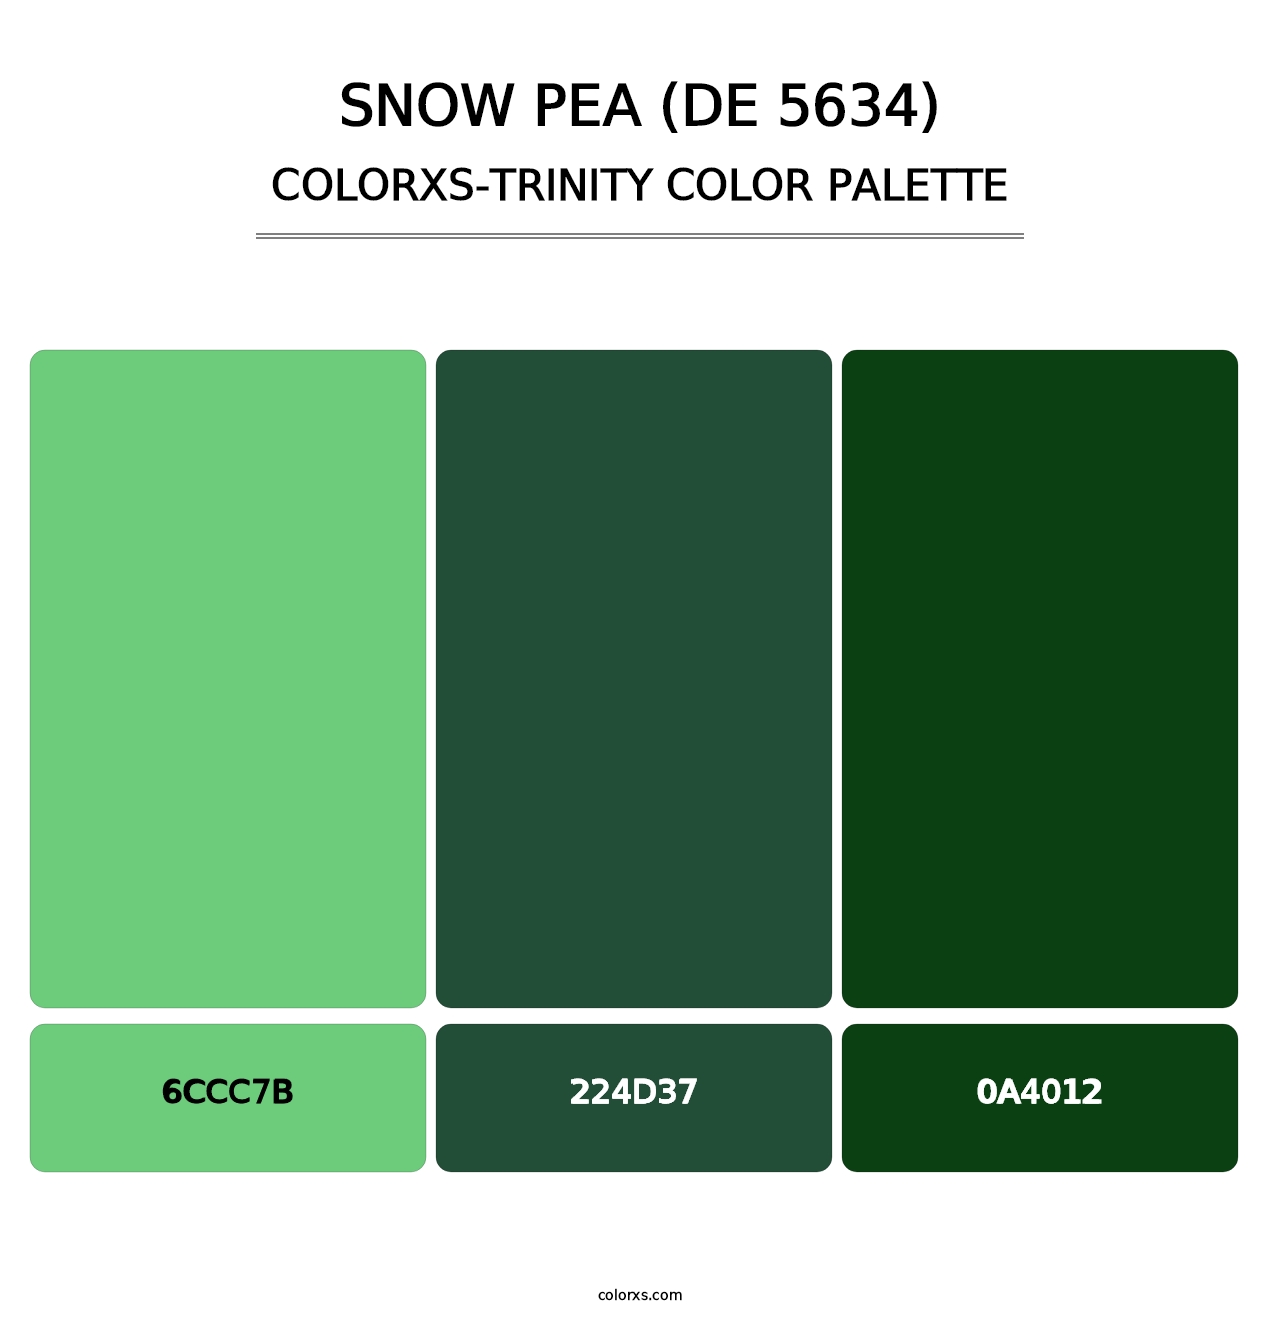 Snow Pea (DE 5634) - Colorxs Trinity Palette